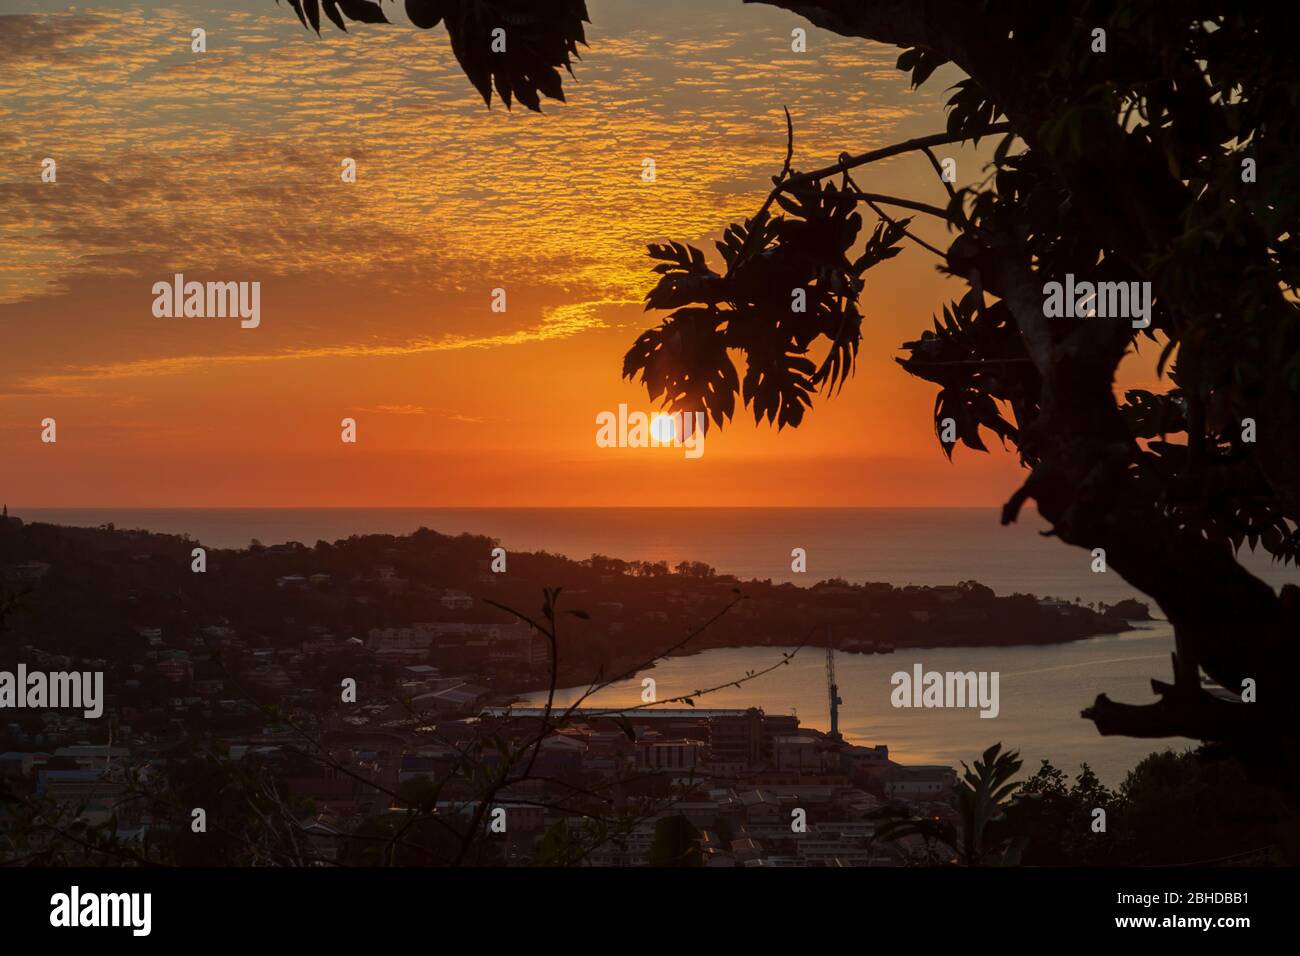 magnifique photographie de coucher de soleil à couper le souffle montrant un port silhouettes d'arbres le soleil lumineux le ciel orange et bleu et le paysage naturel sombre Banque D'Images